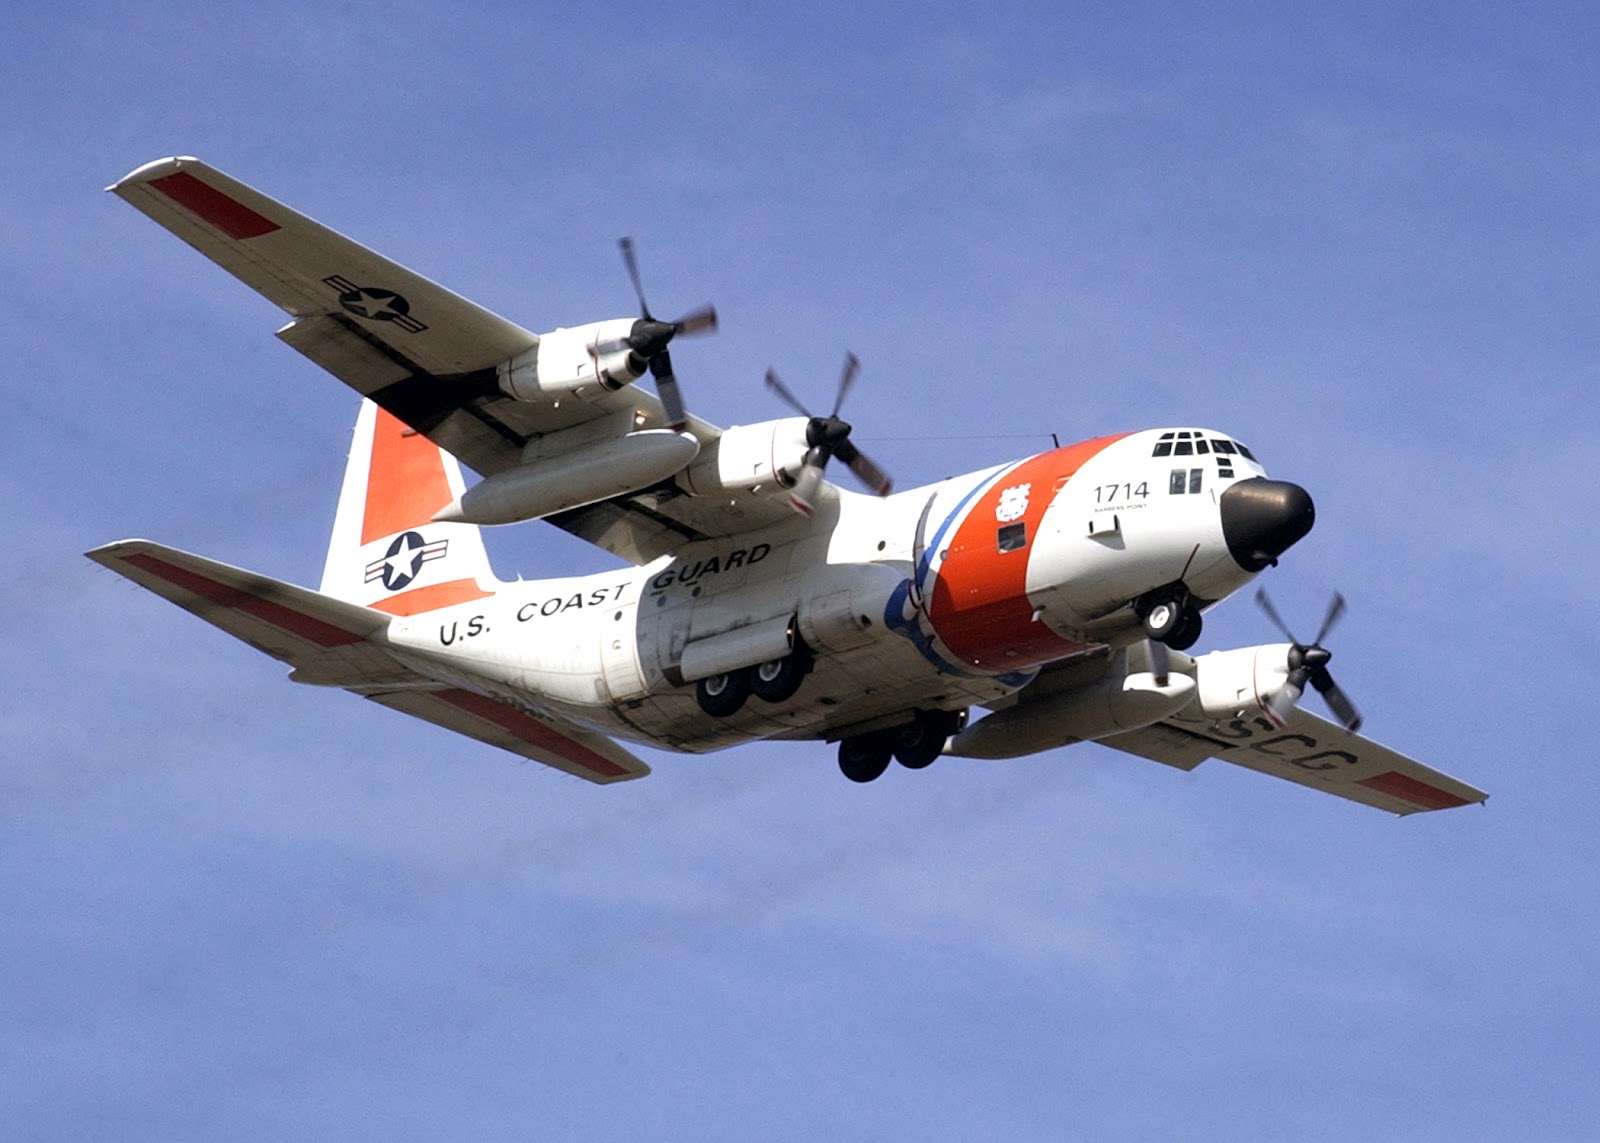 Paper Craft Planes: US Coast Guard HC-130 Hercules Paper Model